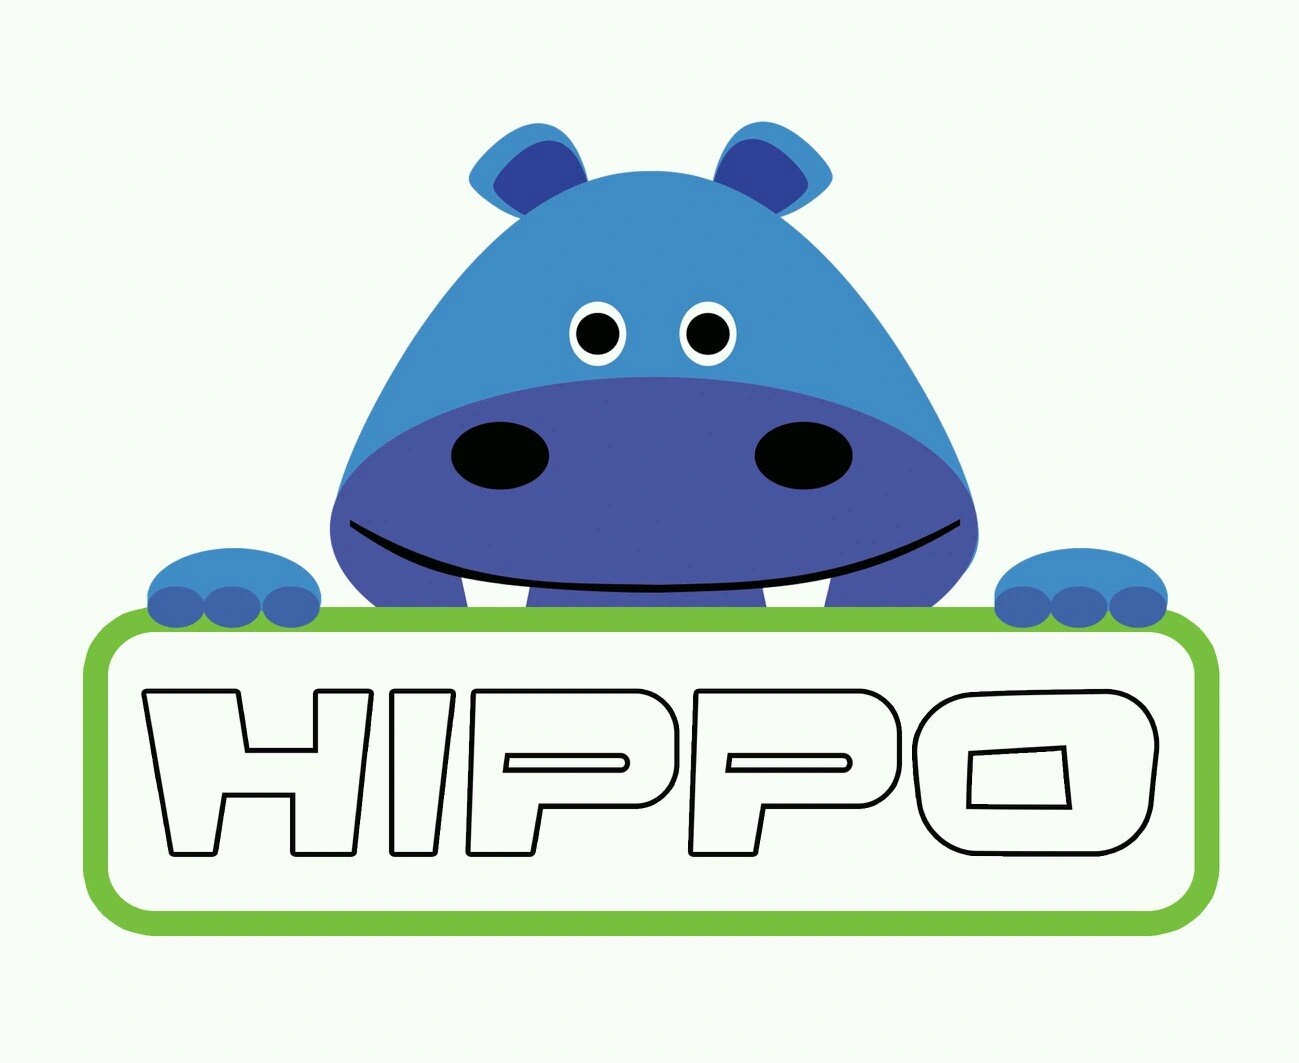 HIPPO